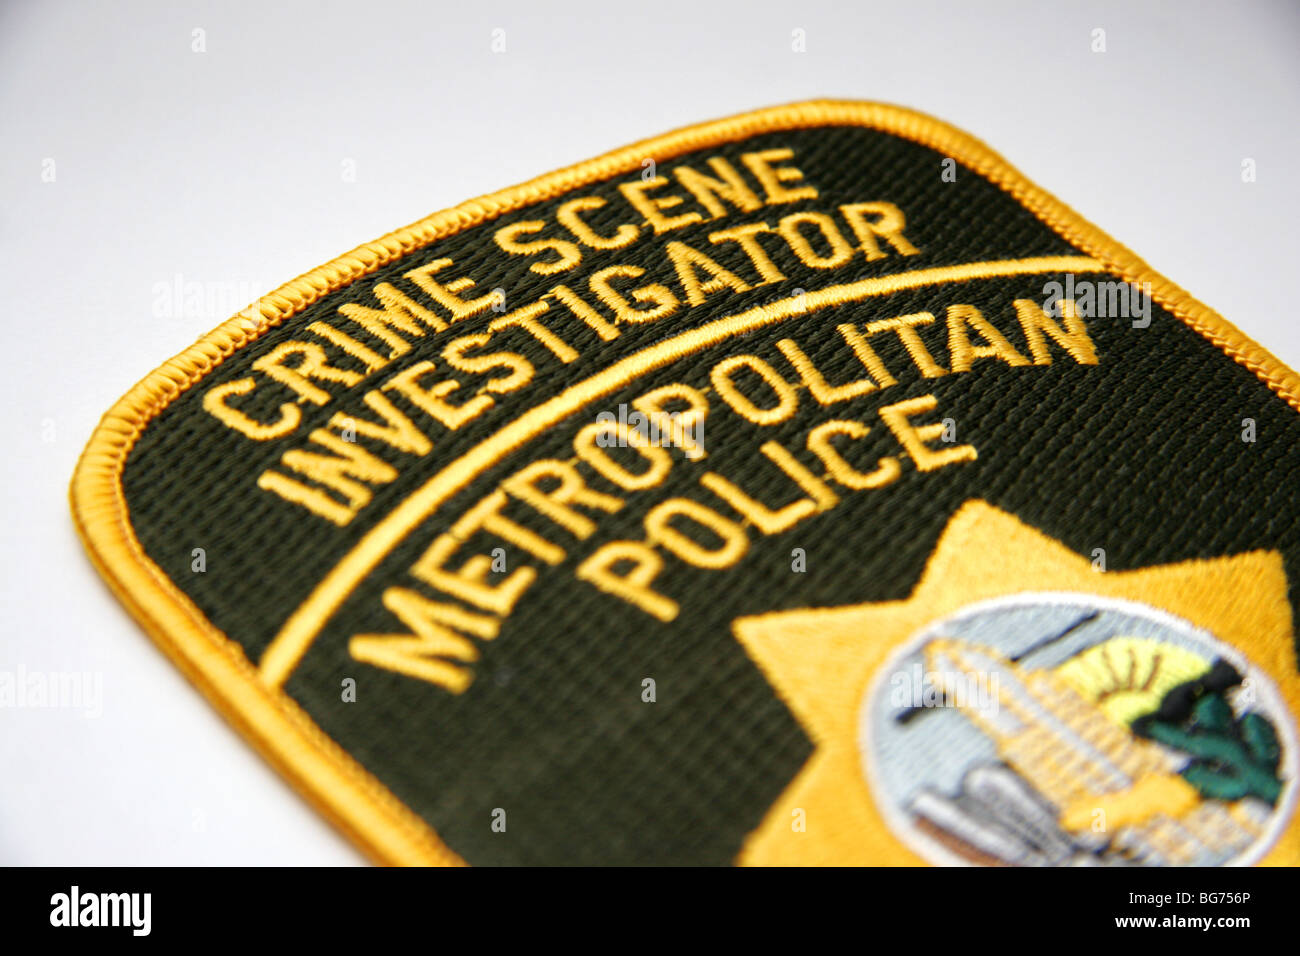 Genuine CSI Las Vegas Police patch Stock Photo